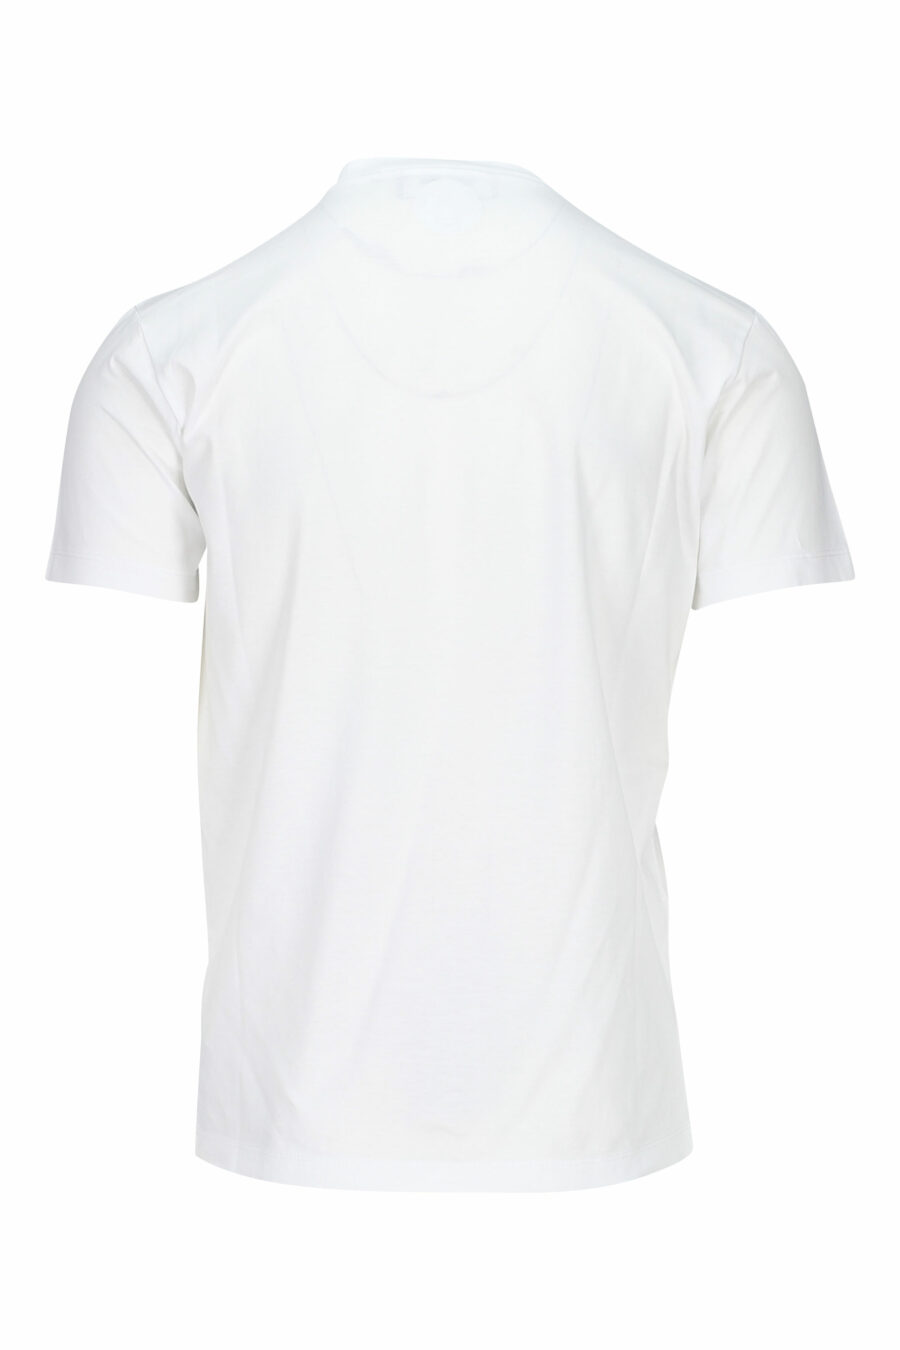 Weißes T-Shirt mit rgb maxilogo - 8052134941089 1